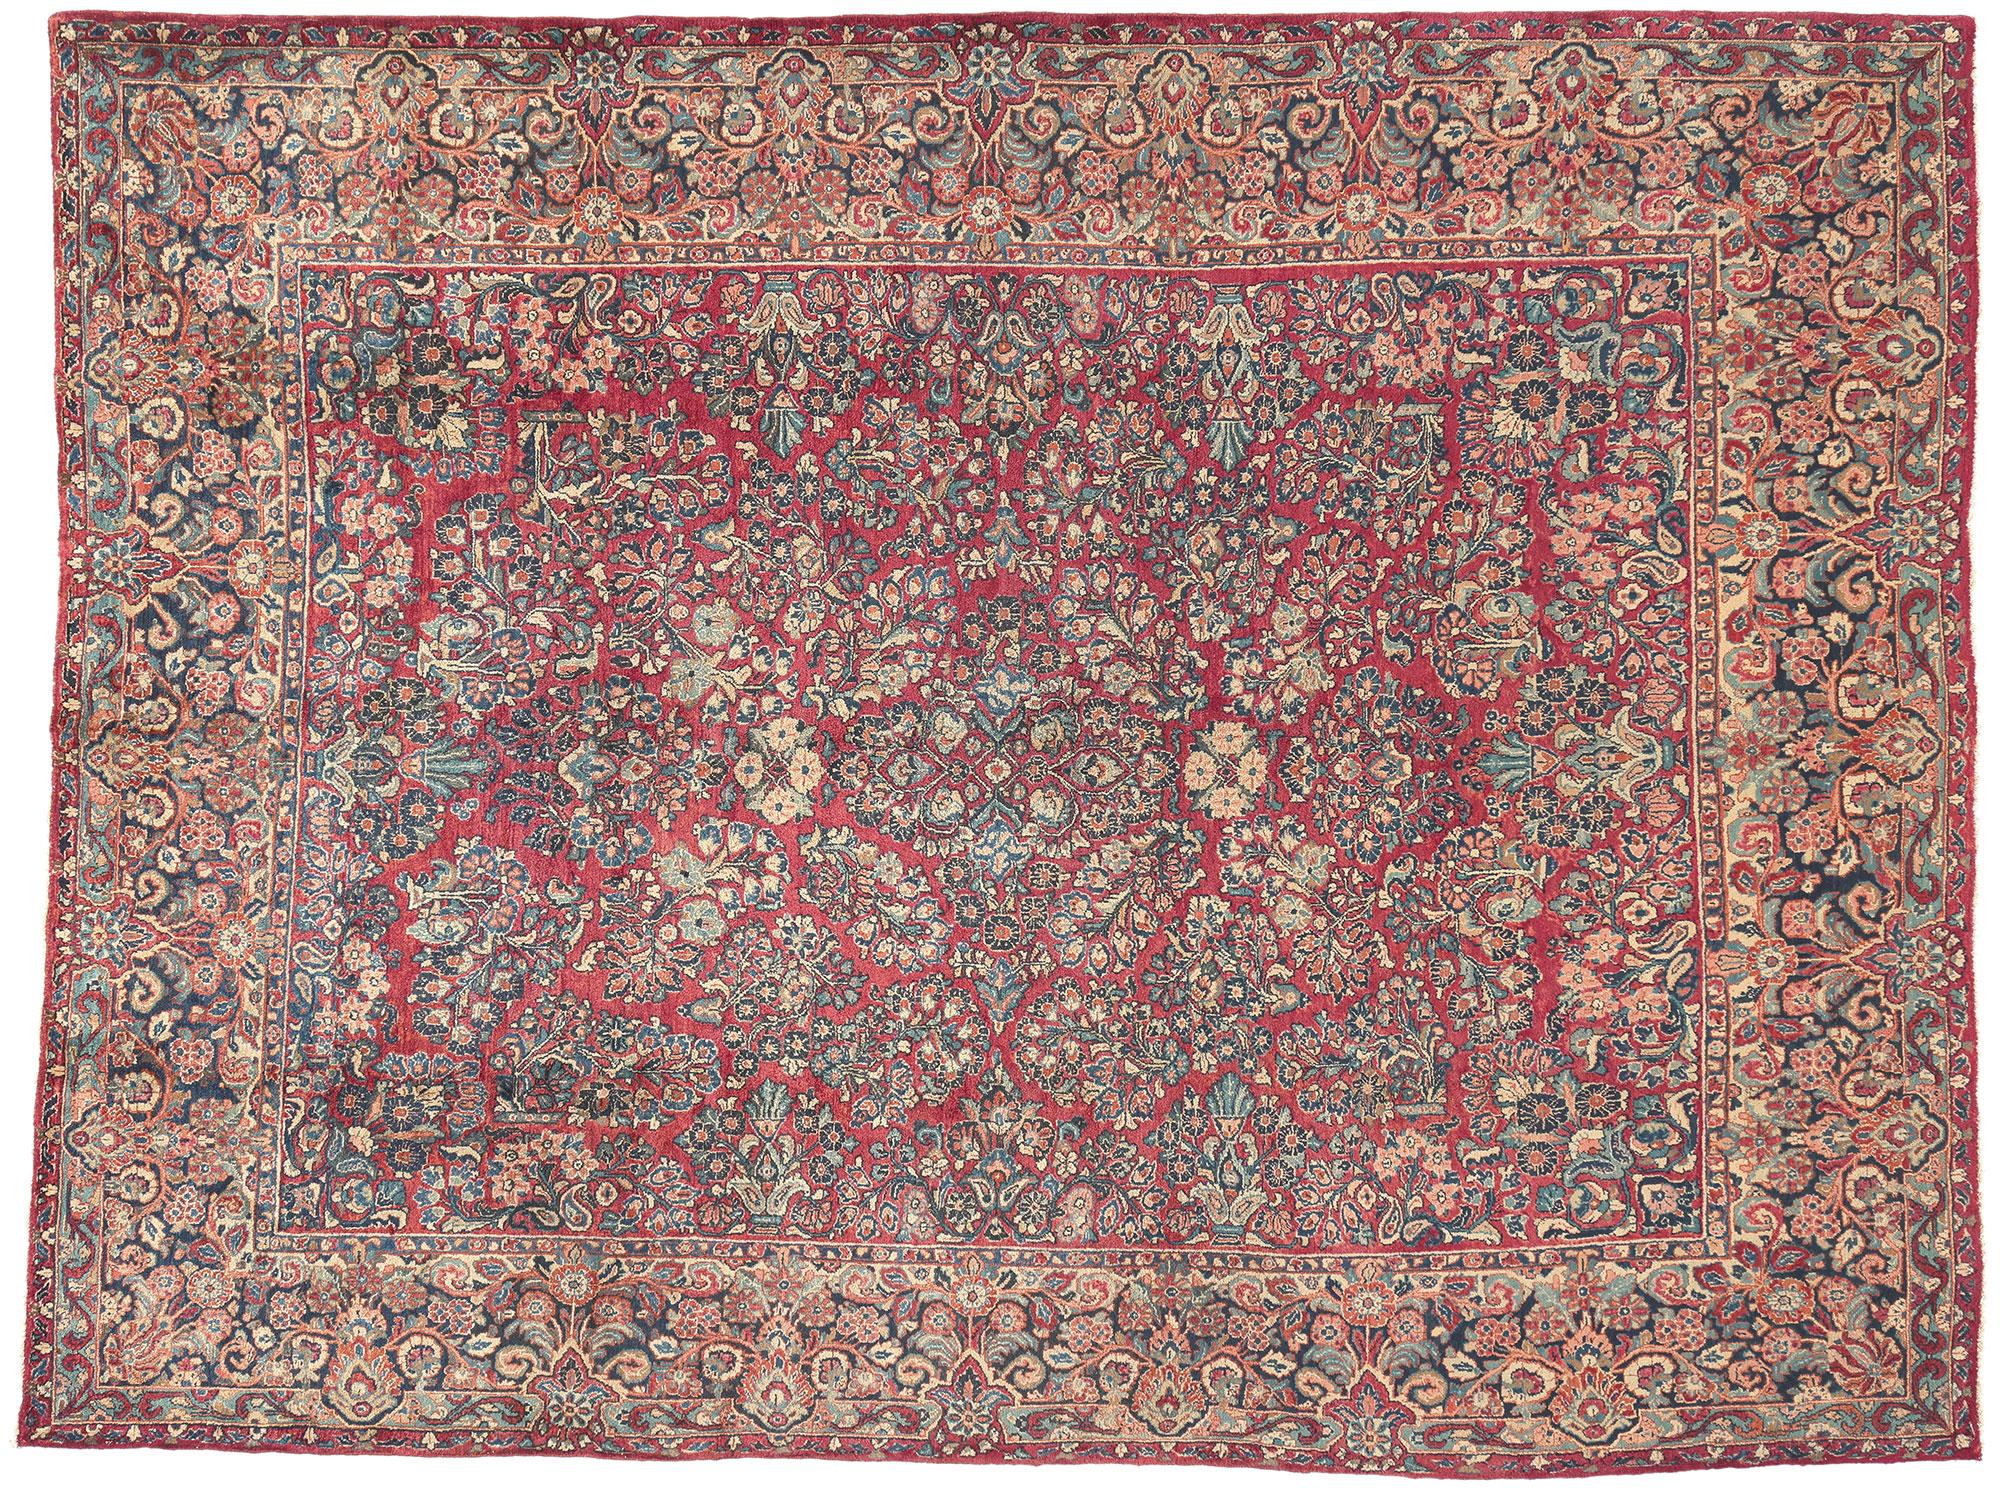 Antique Persian Sarouk Rug, Timeless Elegance Meets Art Nouveau For Sale 3